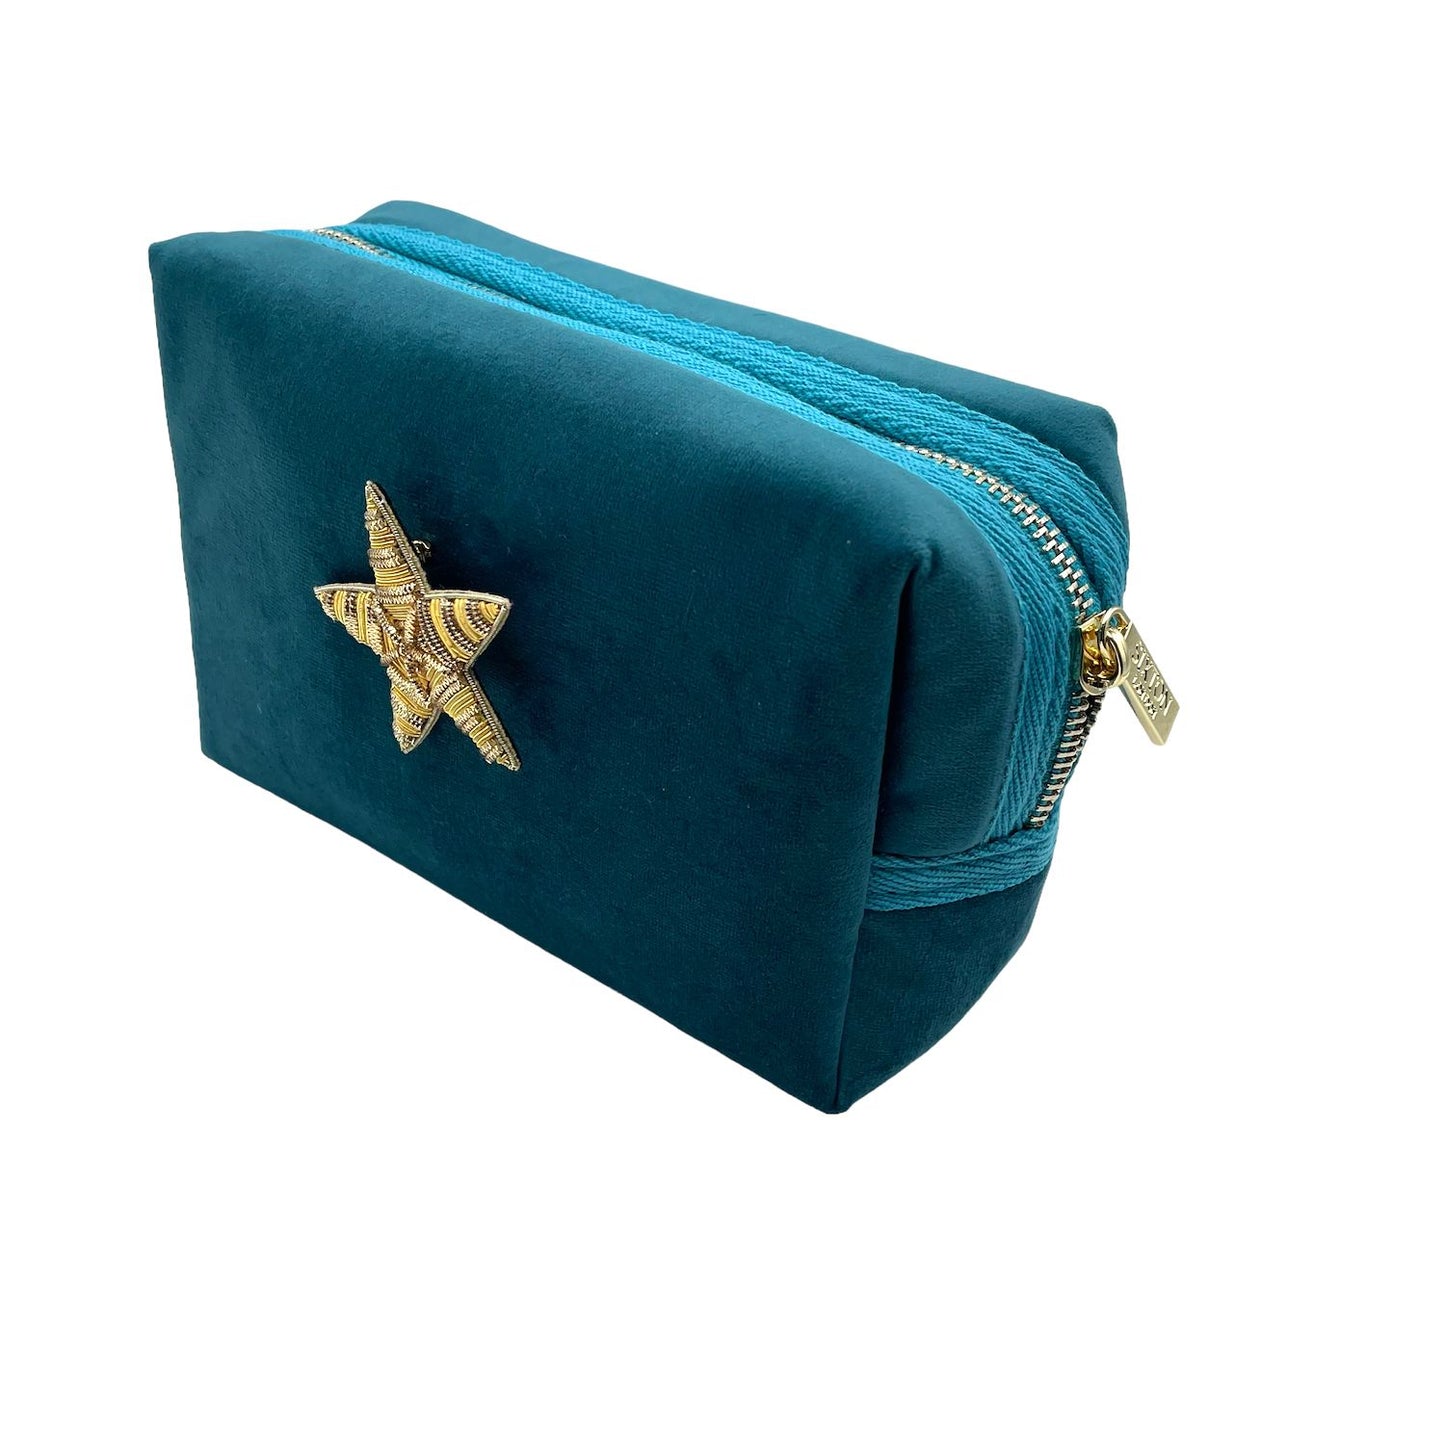 Teal make-up bag & gold star pin - recycled velvet